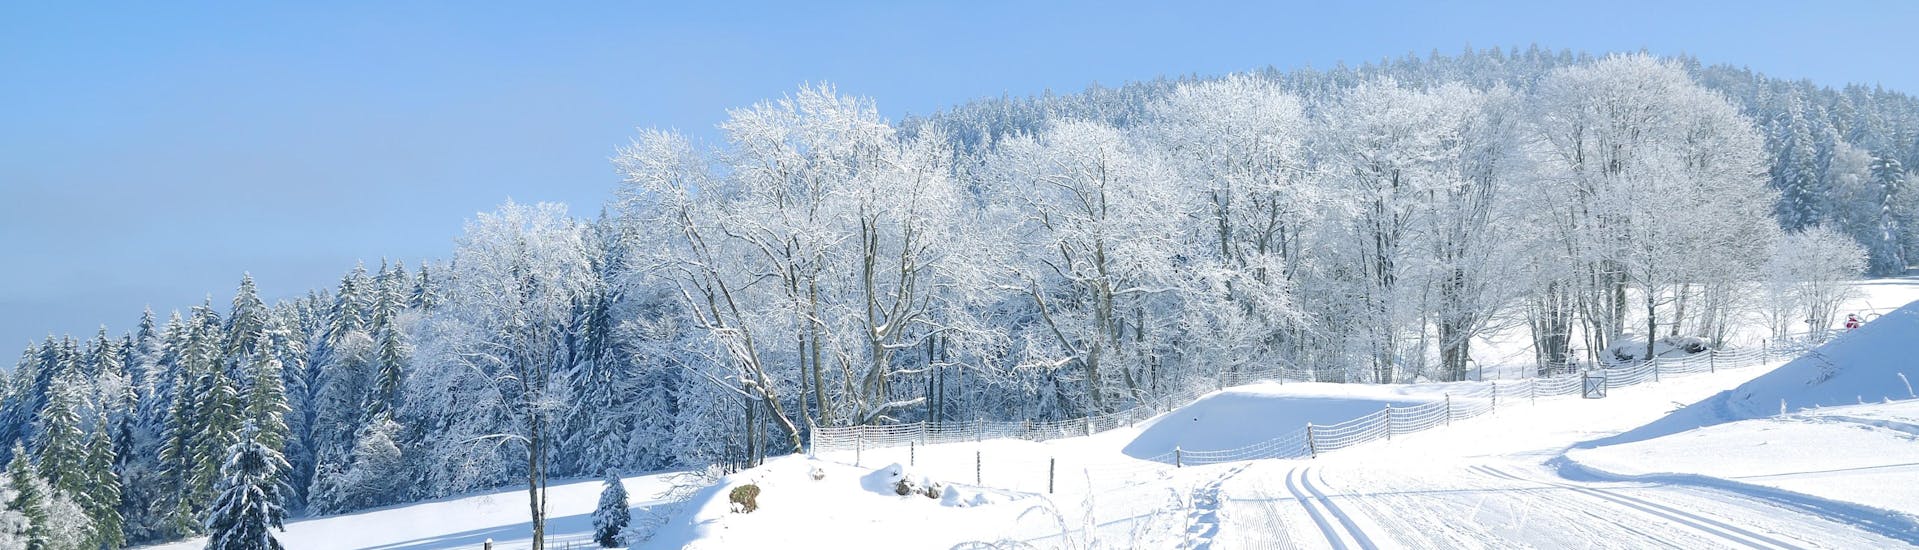 Bild der Pisten im Bayerischen Wald bei Sankt Englmar, wo Sie Skikurse buchen können.